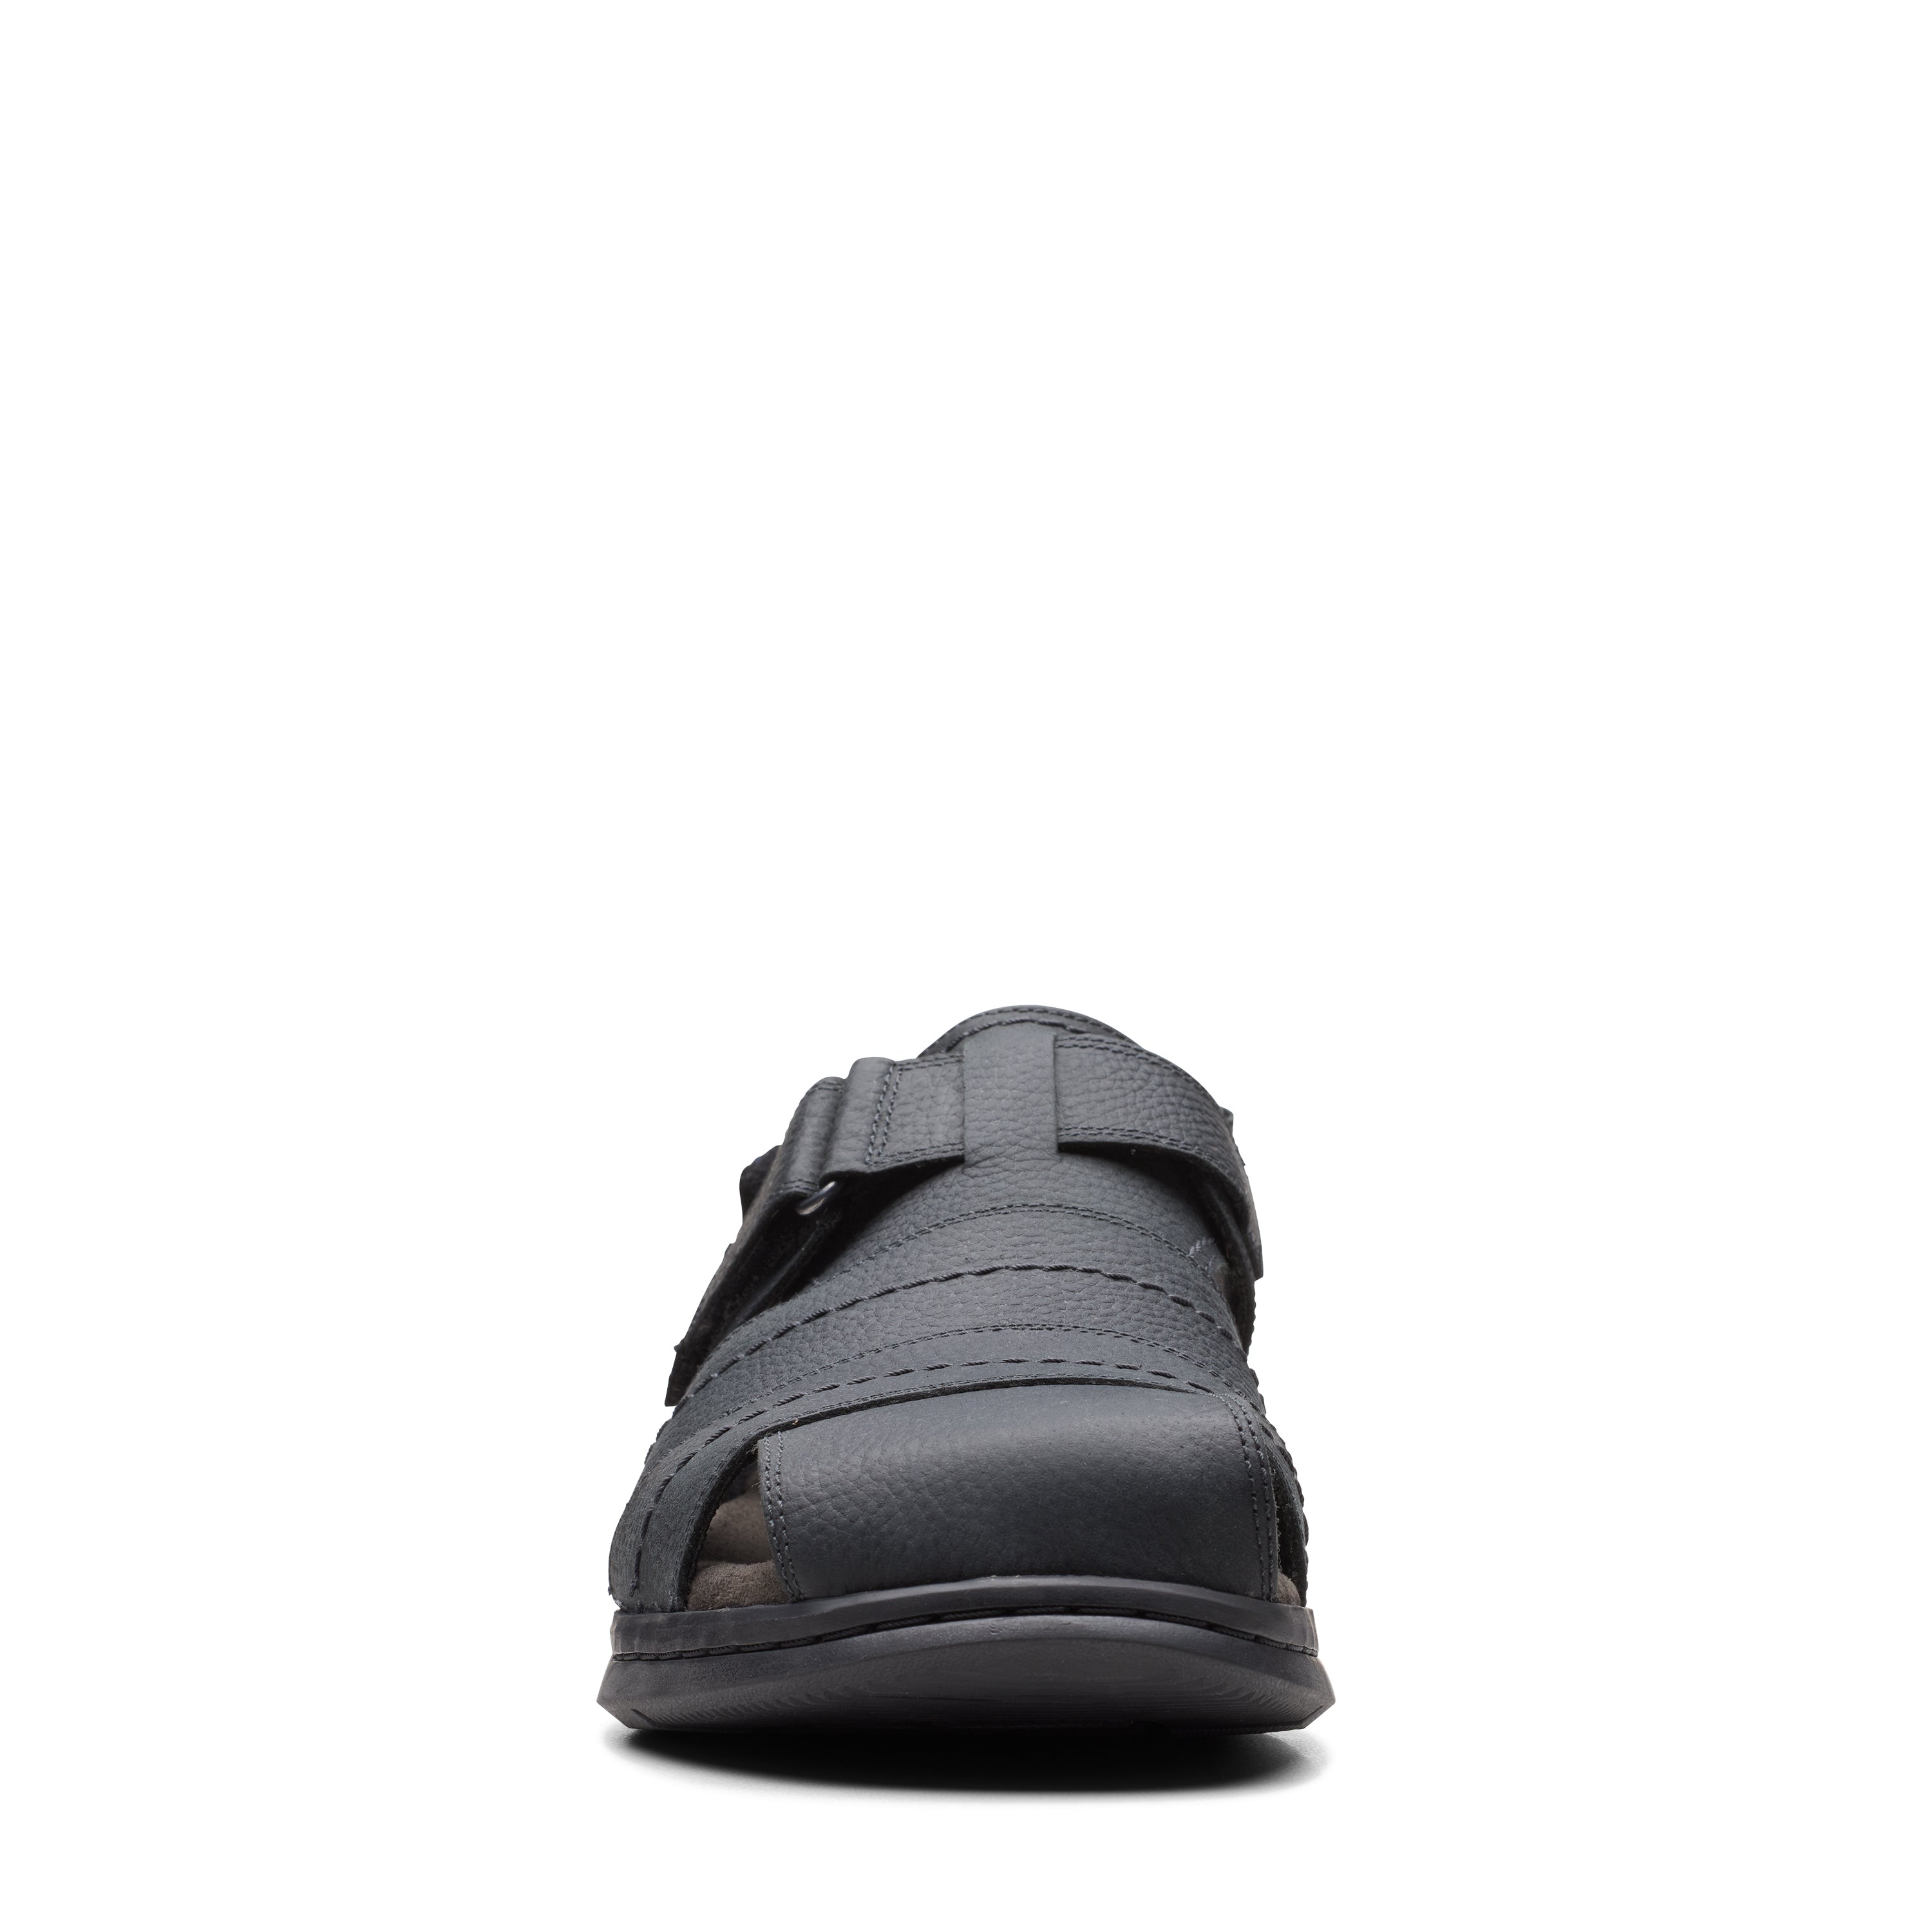 Clarks Men Dusty Olive Outdoor Sandals-9 UK (43 EU) (26148964) : Amazon.in:  Shoes & Handbags